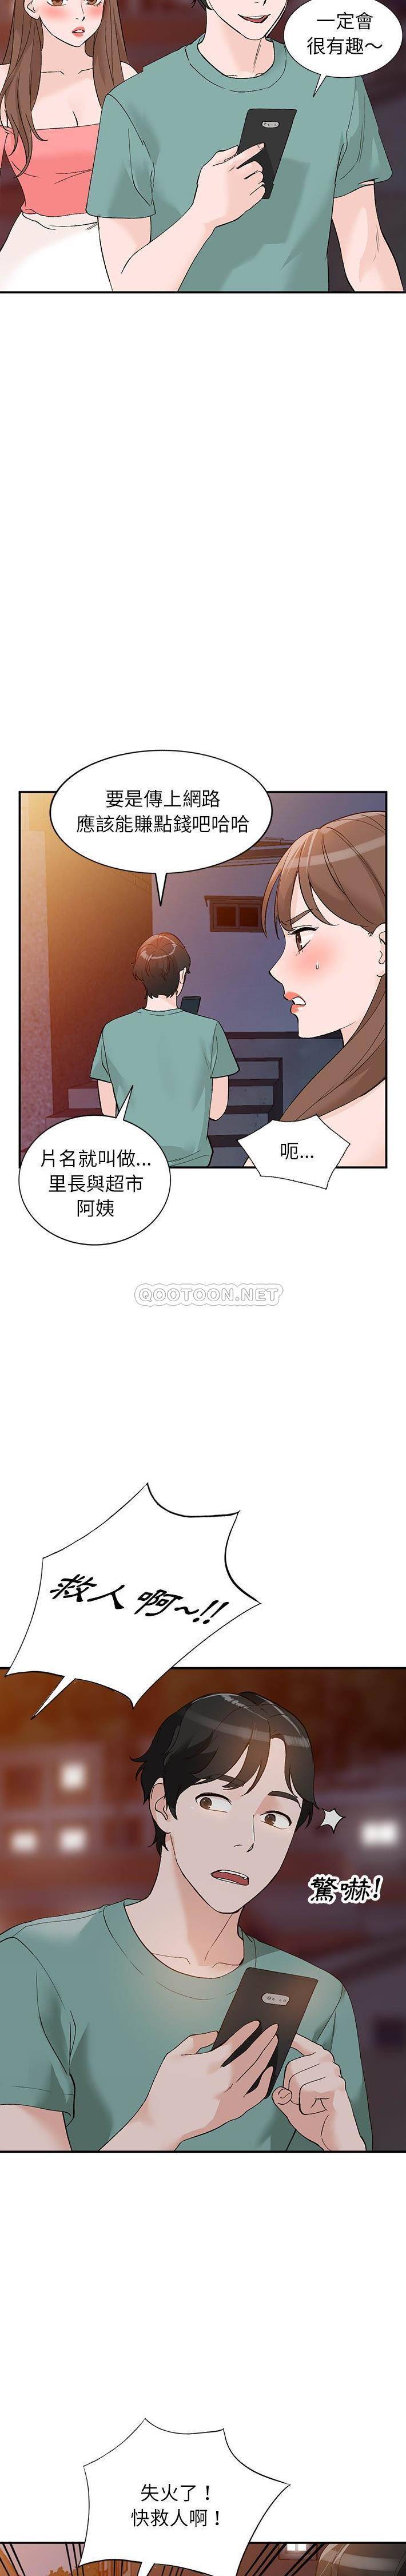 韩国污漫画 她們的小秘密(小鎮上的女人們) 第14话 20